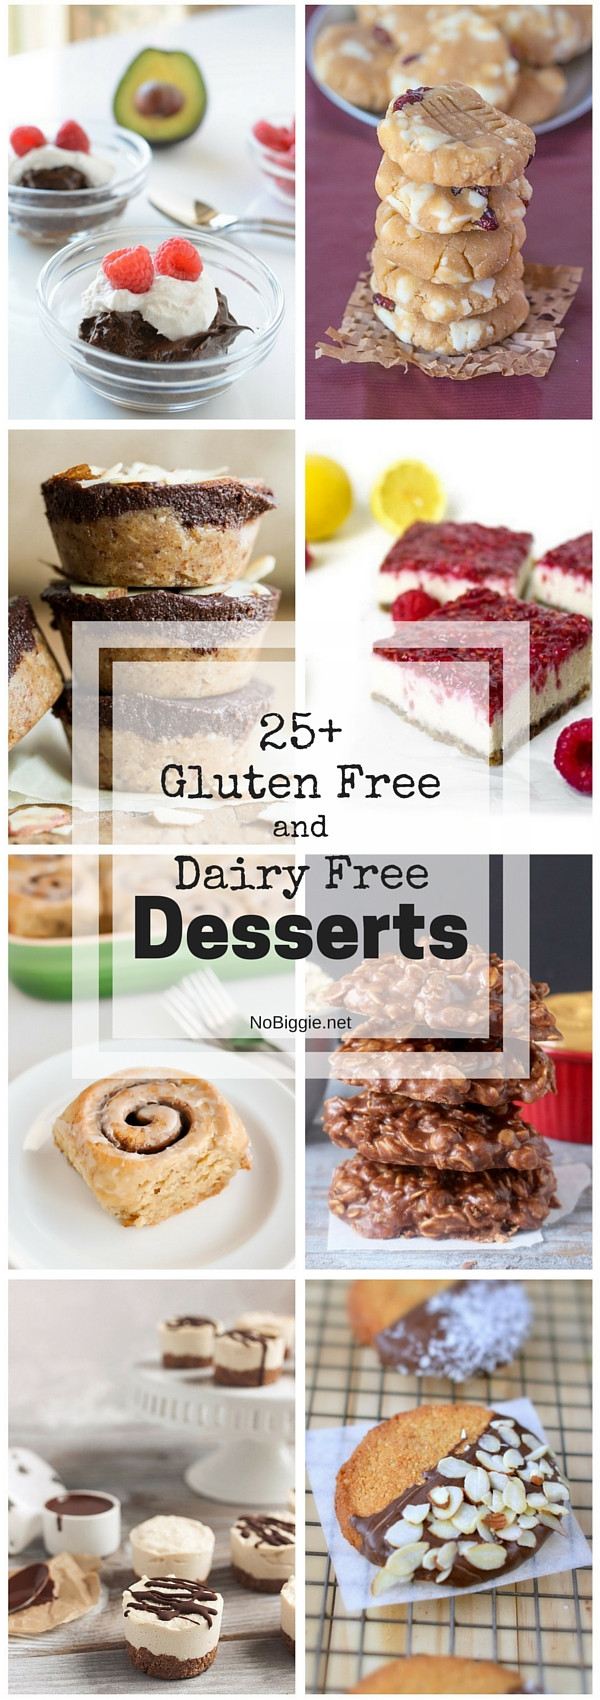 Gluten Free And Dairy Free Desserts
 25 Gluten Free and Dairy Free Desserts